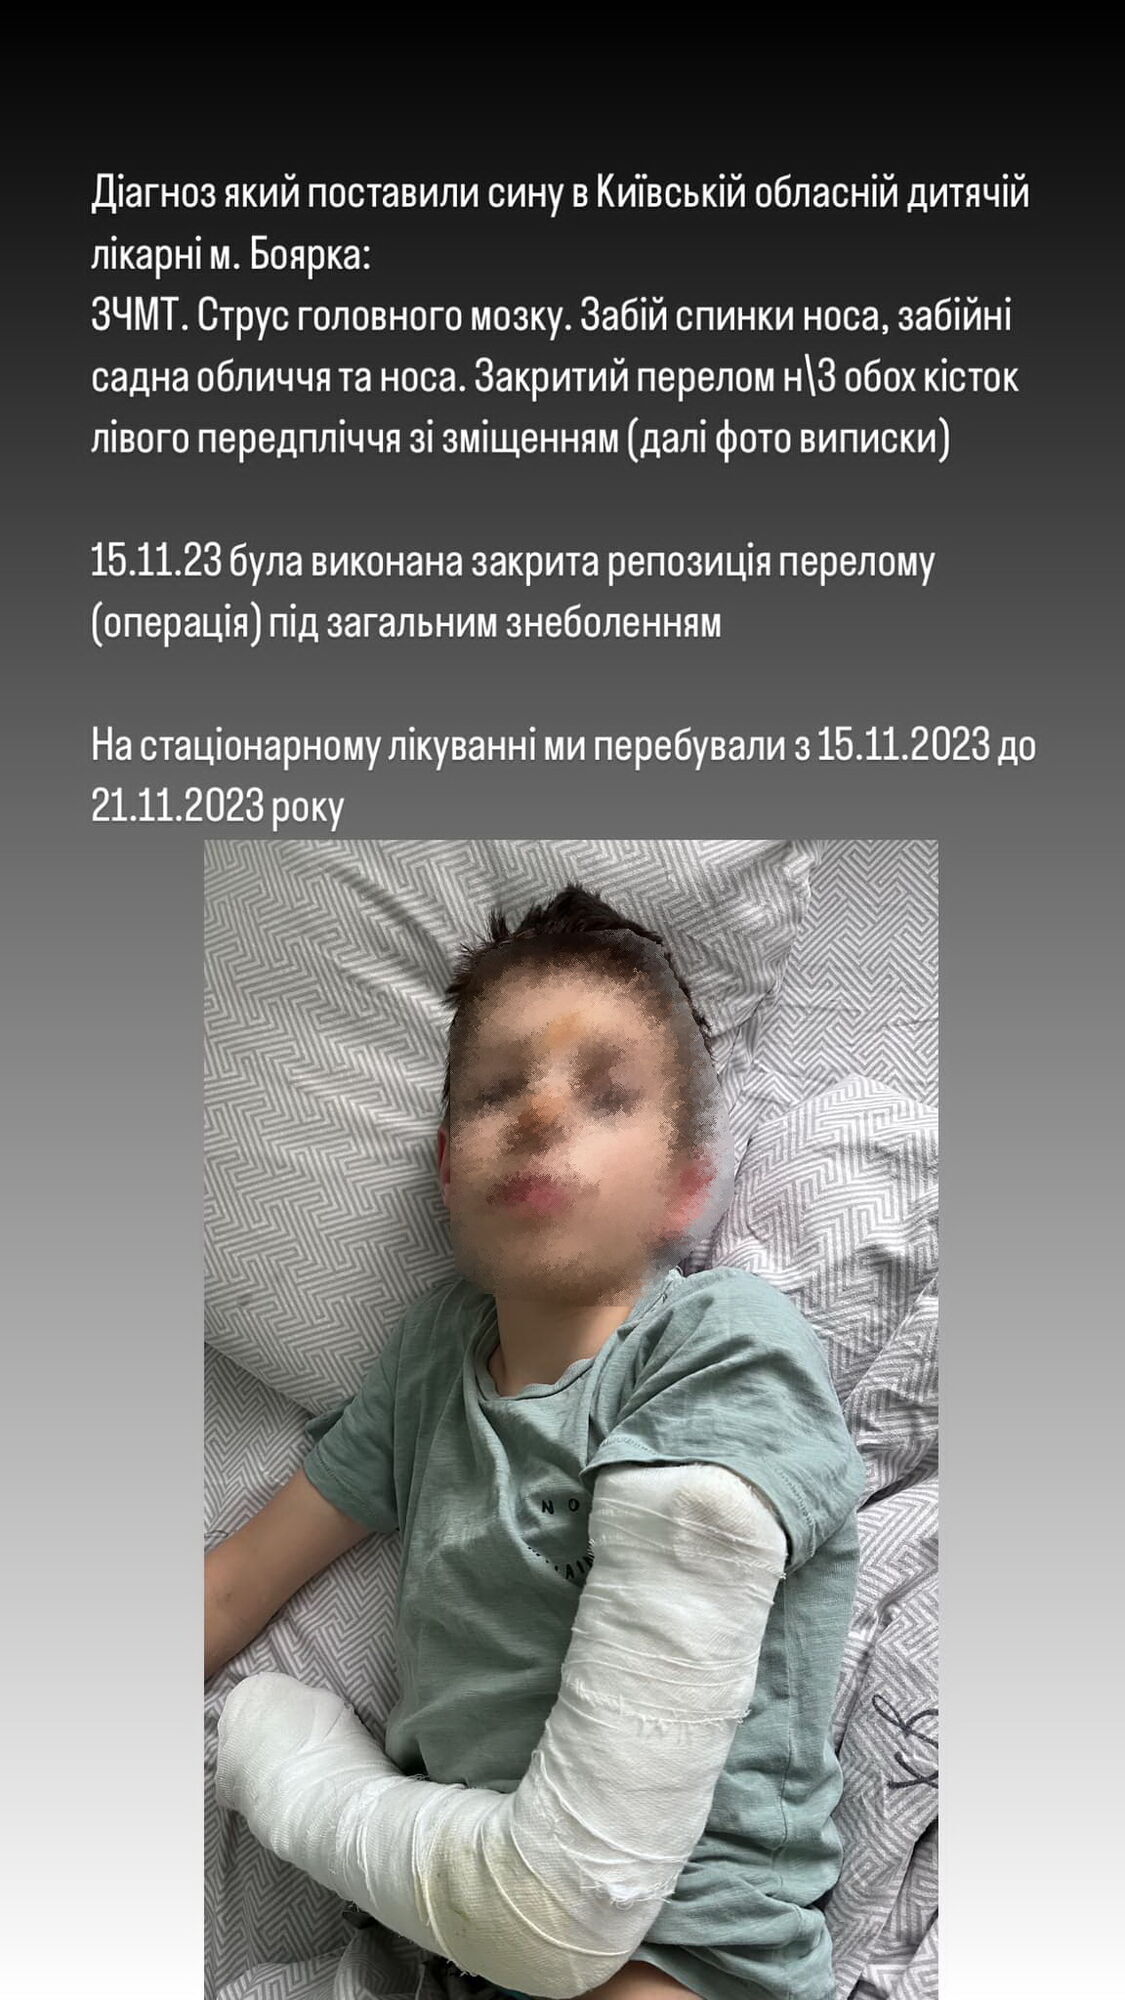 Закритий перелом та струс мозку: на Київщині у гімназії дитину штовхнули з висоти. Подробиці інциденту та відео